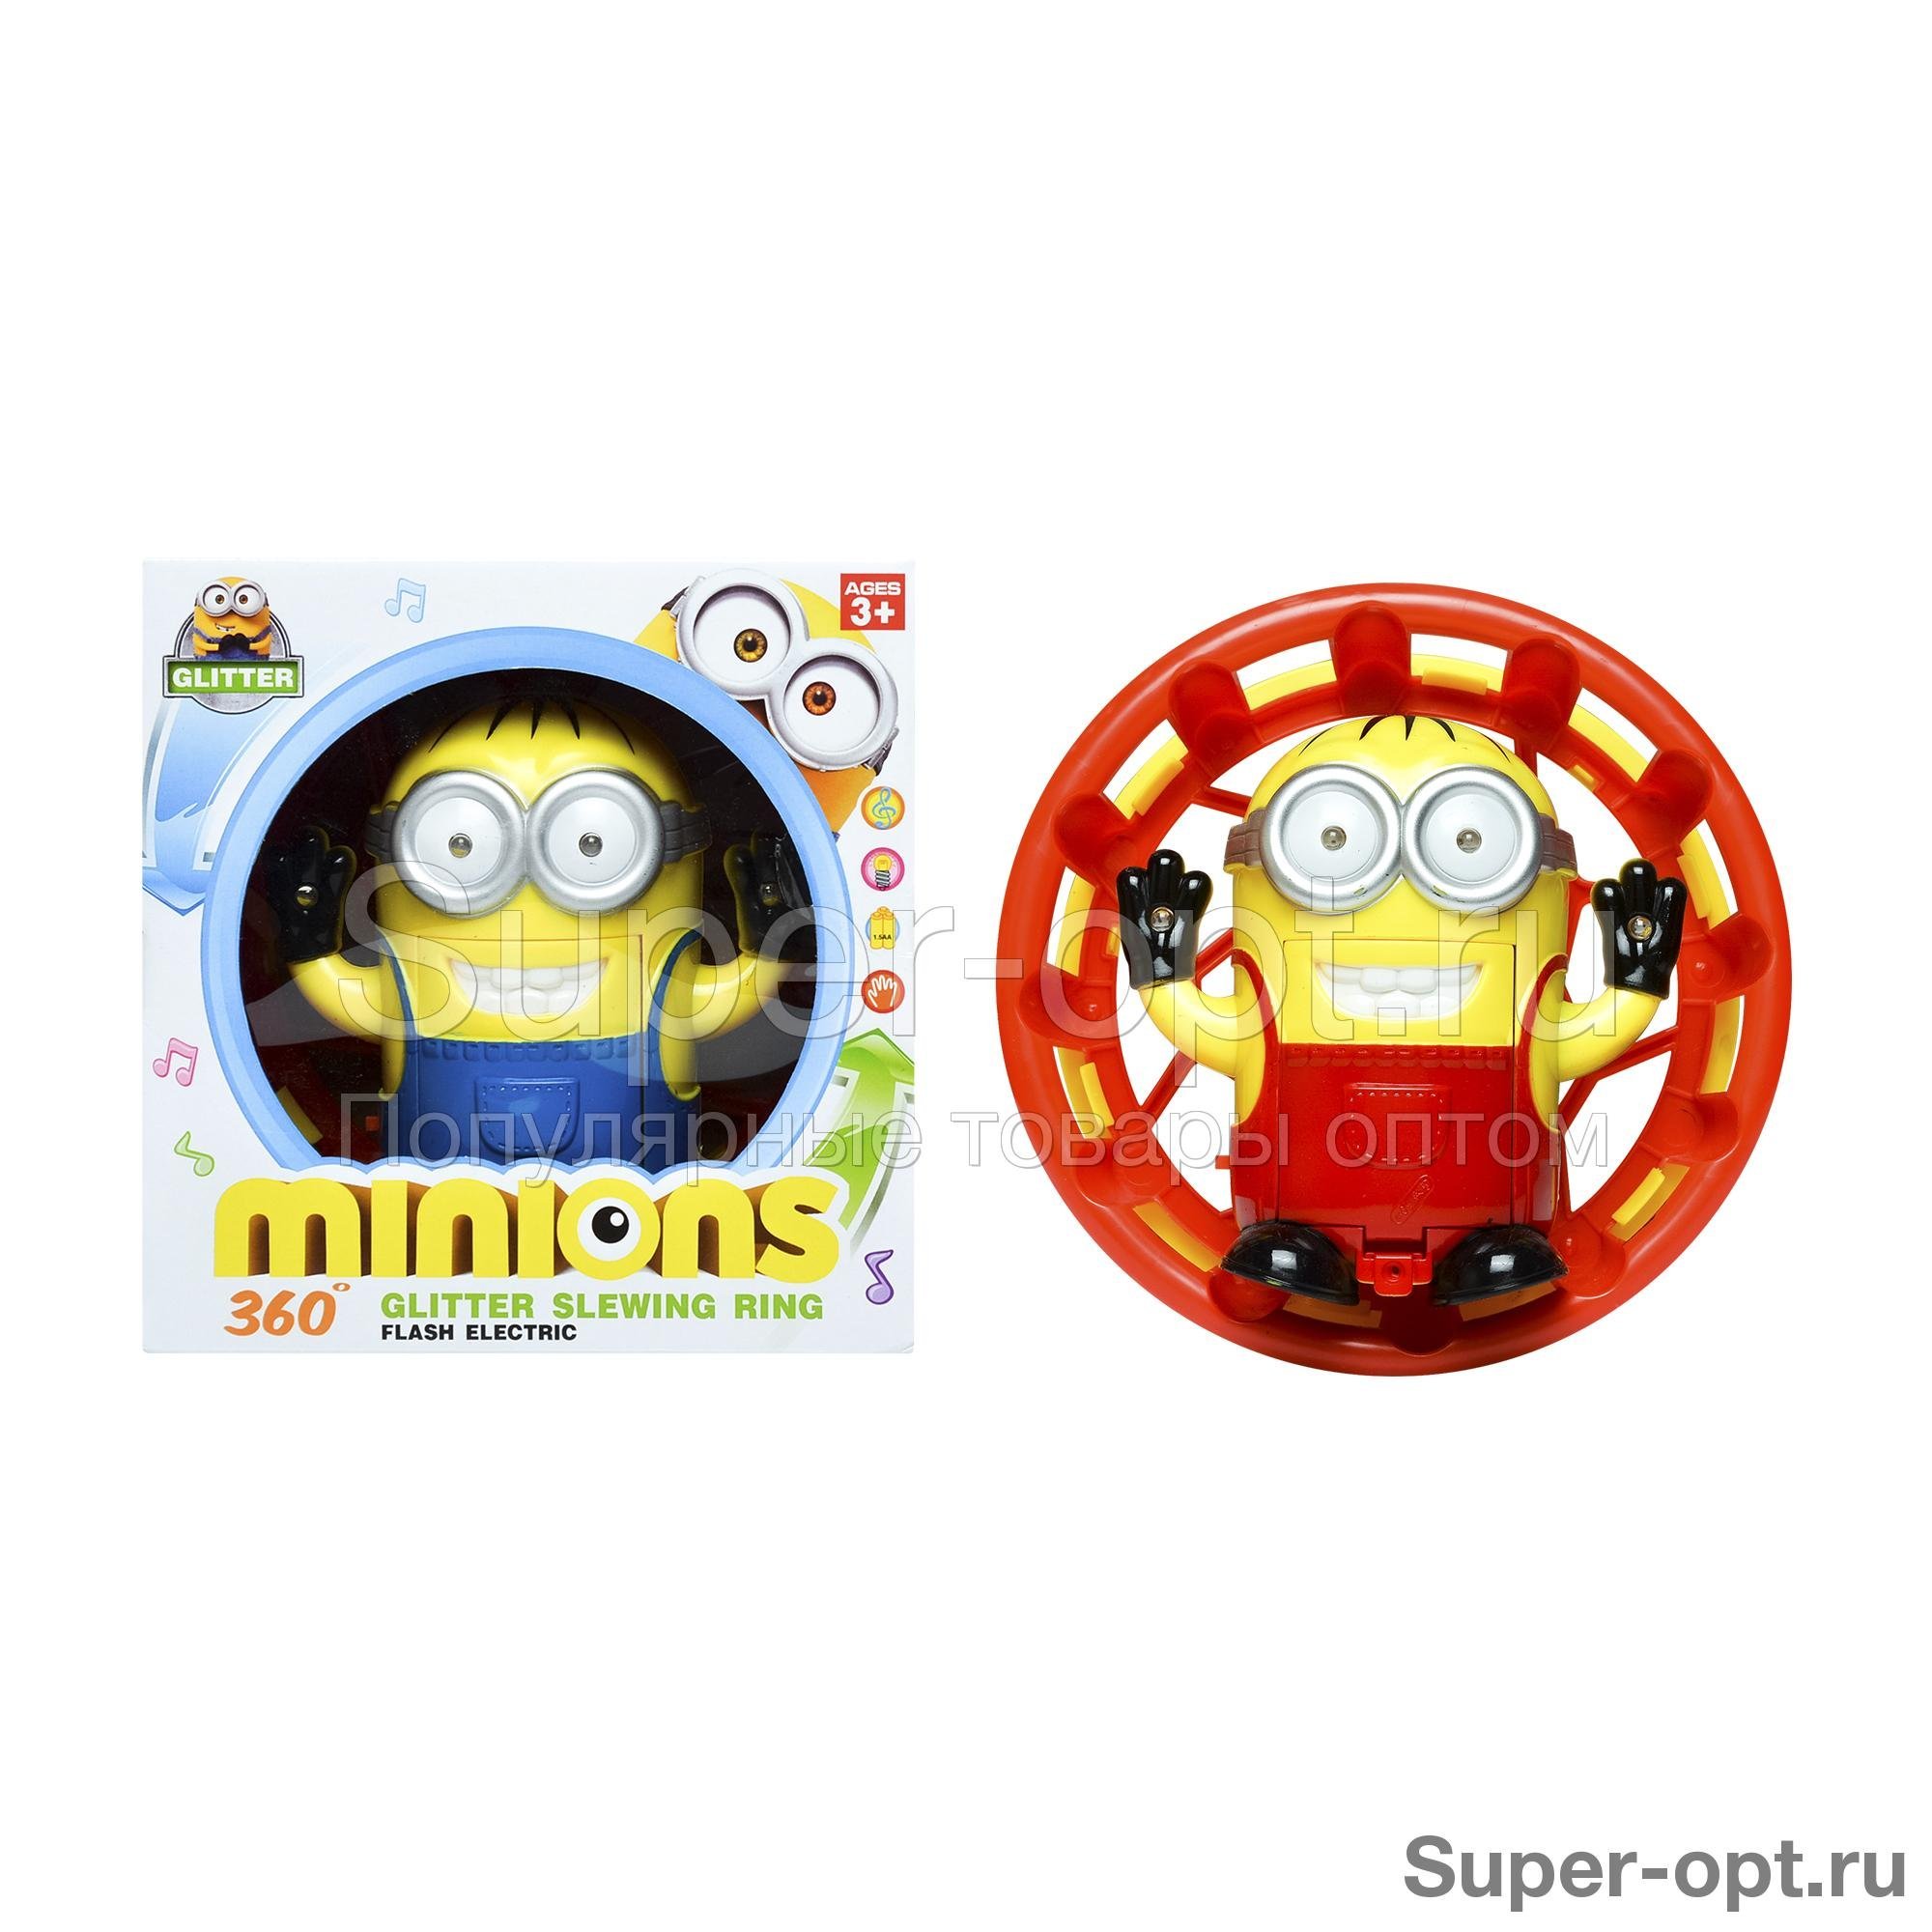 Вращающаяся игрушка 360 Glitter Slewing Ring со звуковыми эффектами Minion